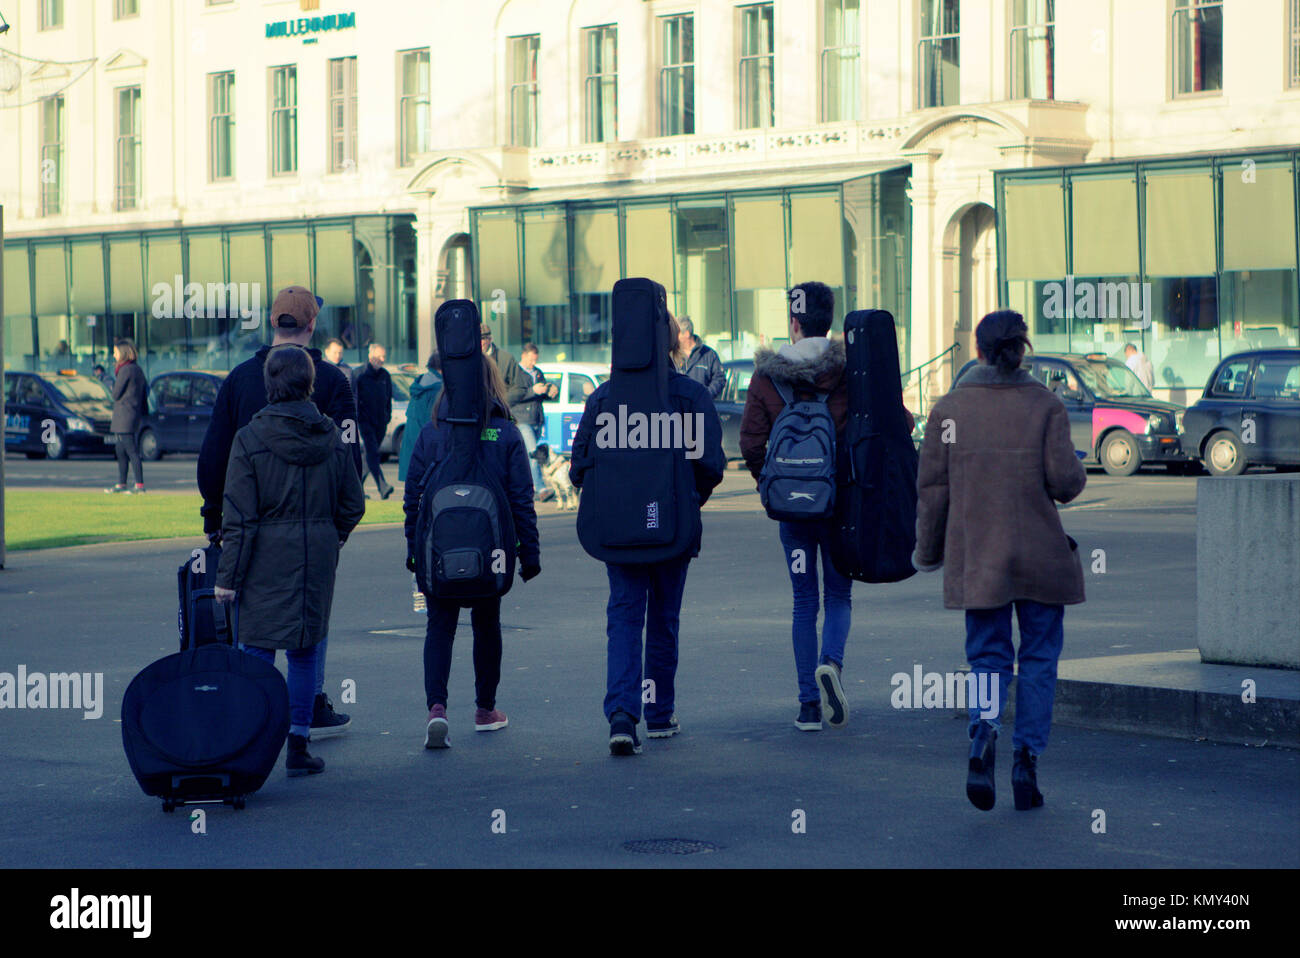 Gruppe band Masse von jungen Menschen zu Fuß auf der Straße Jungen und Mädchen aus gesehen hinter mit Gitarre Fälle, George Square, Glasgow, Vereinigtes Königreich Stockfoto